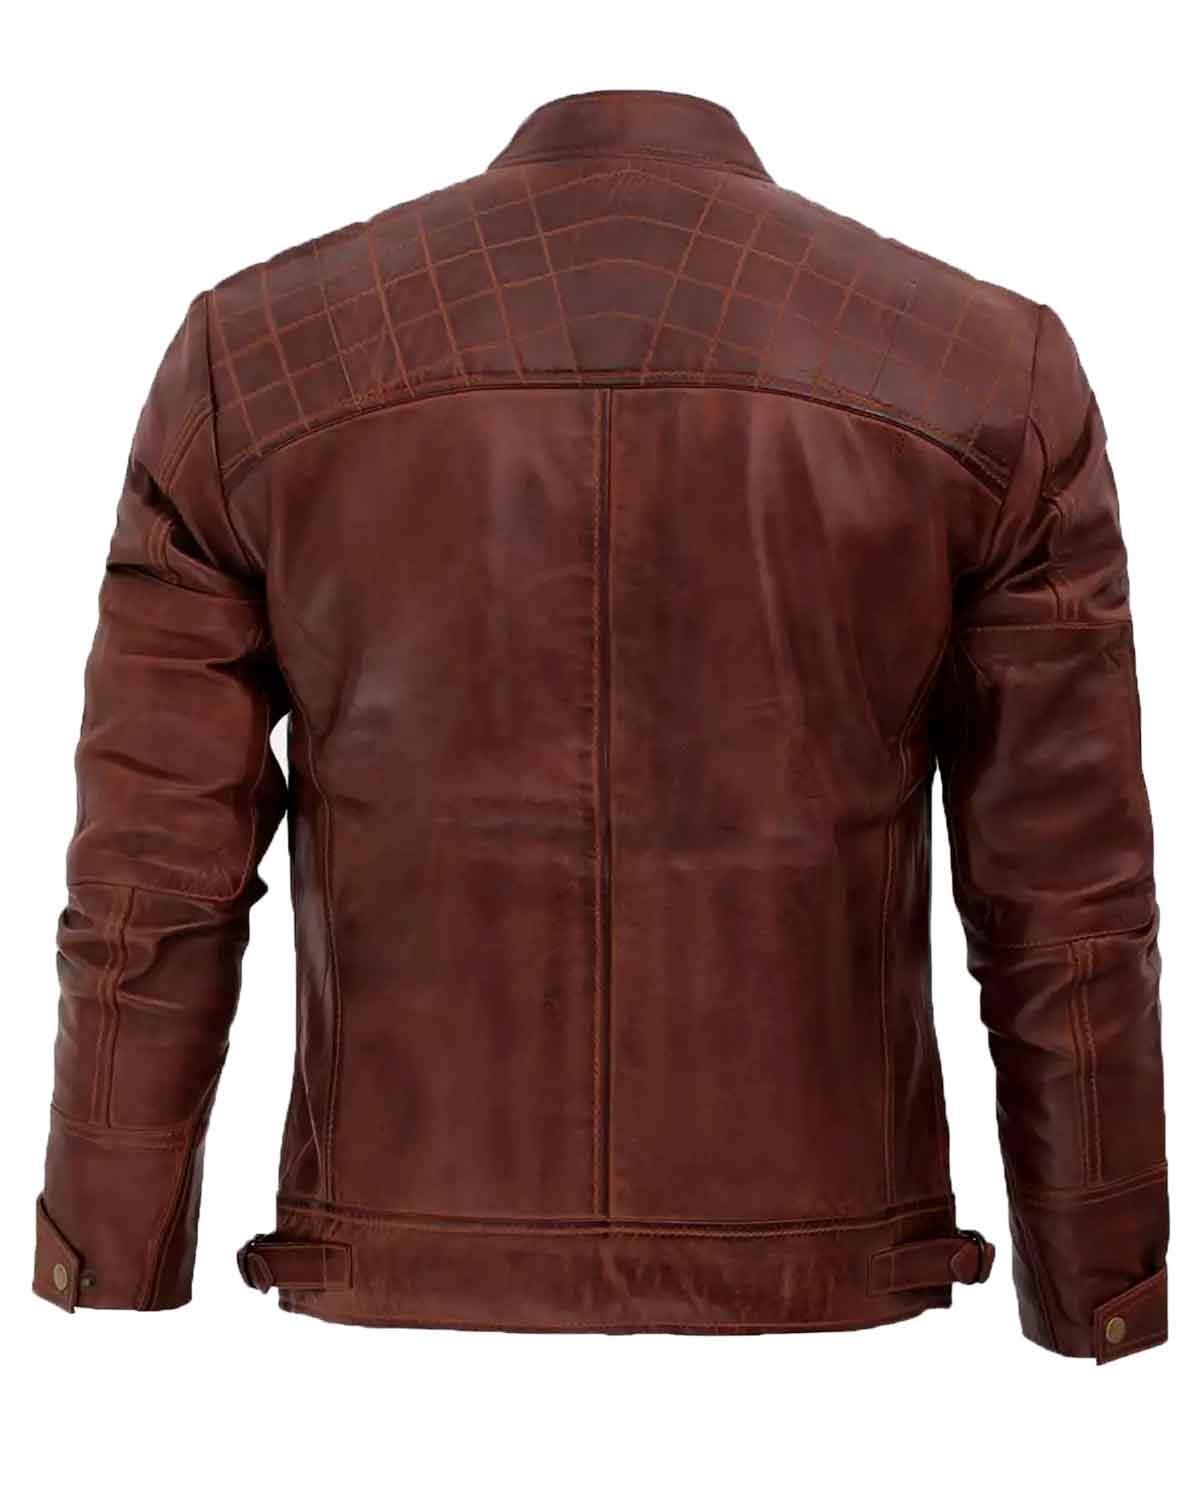 Mens Distressed Brown Leather Motorcycle Jacket | Elite Jacket